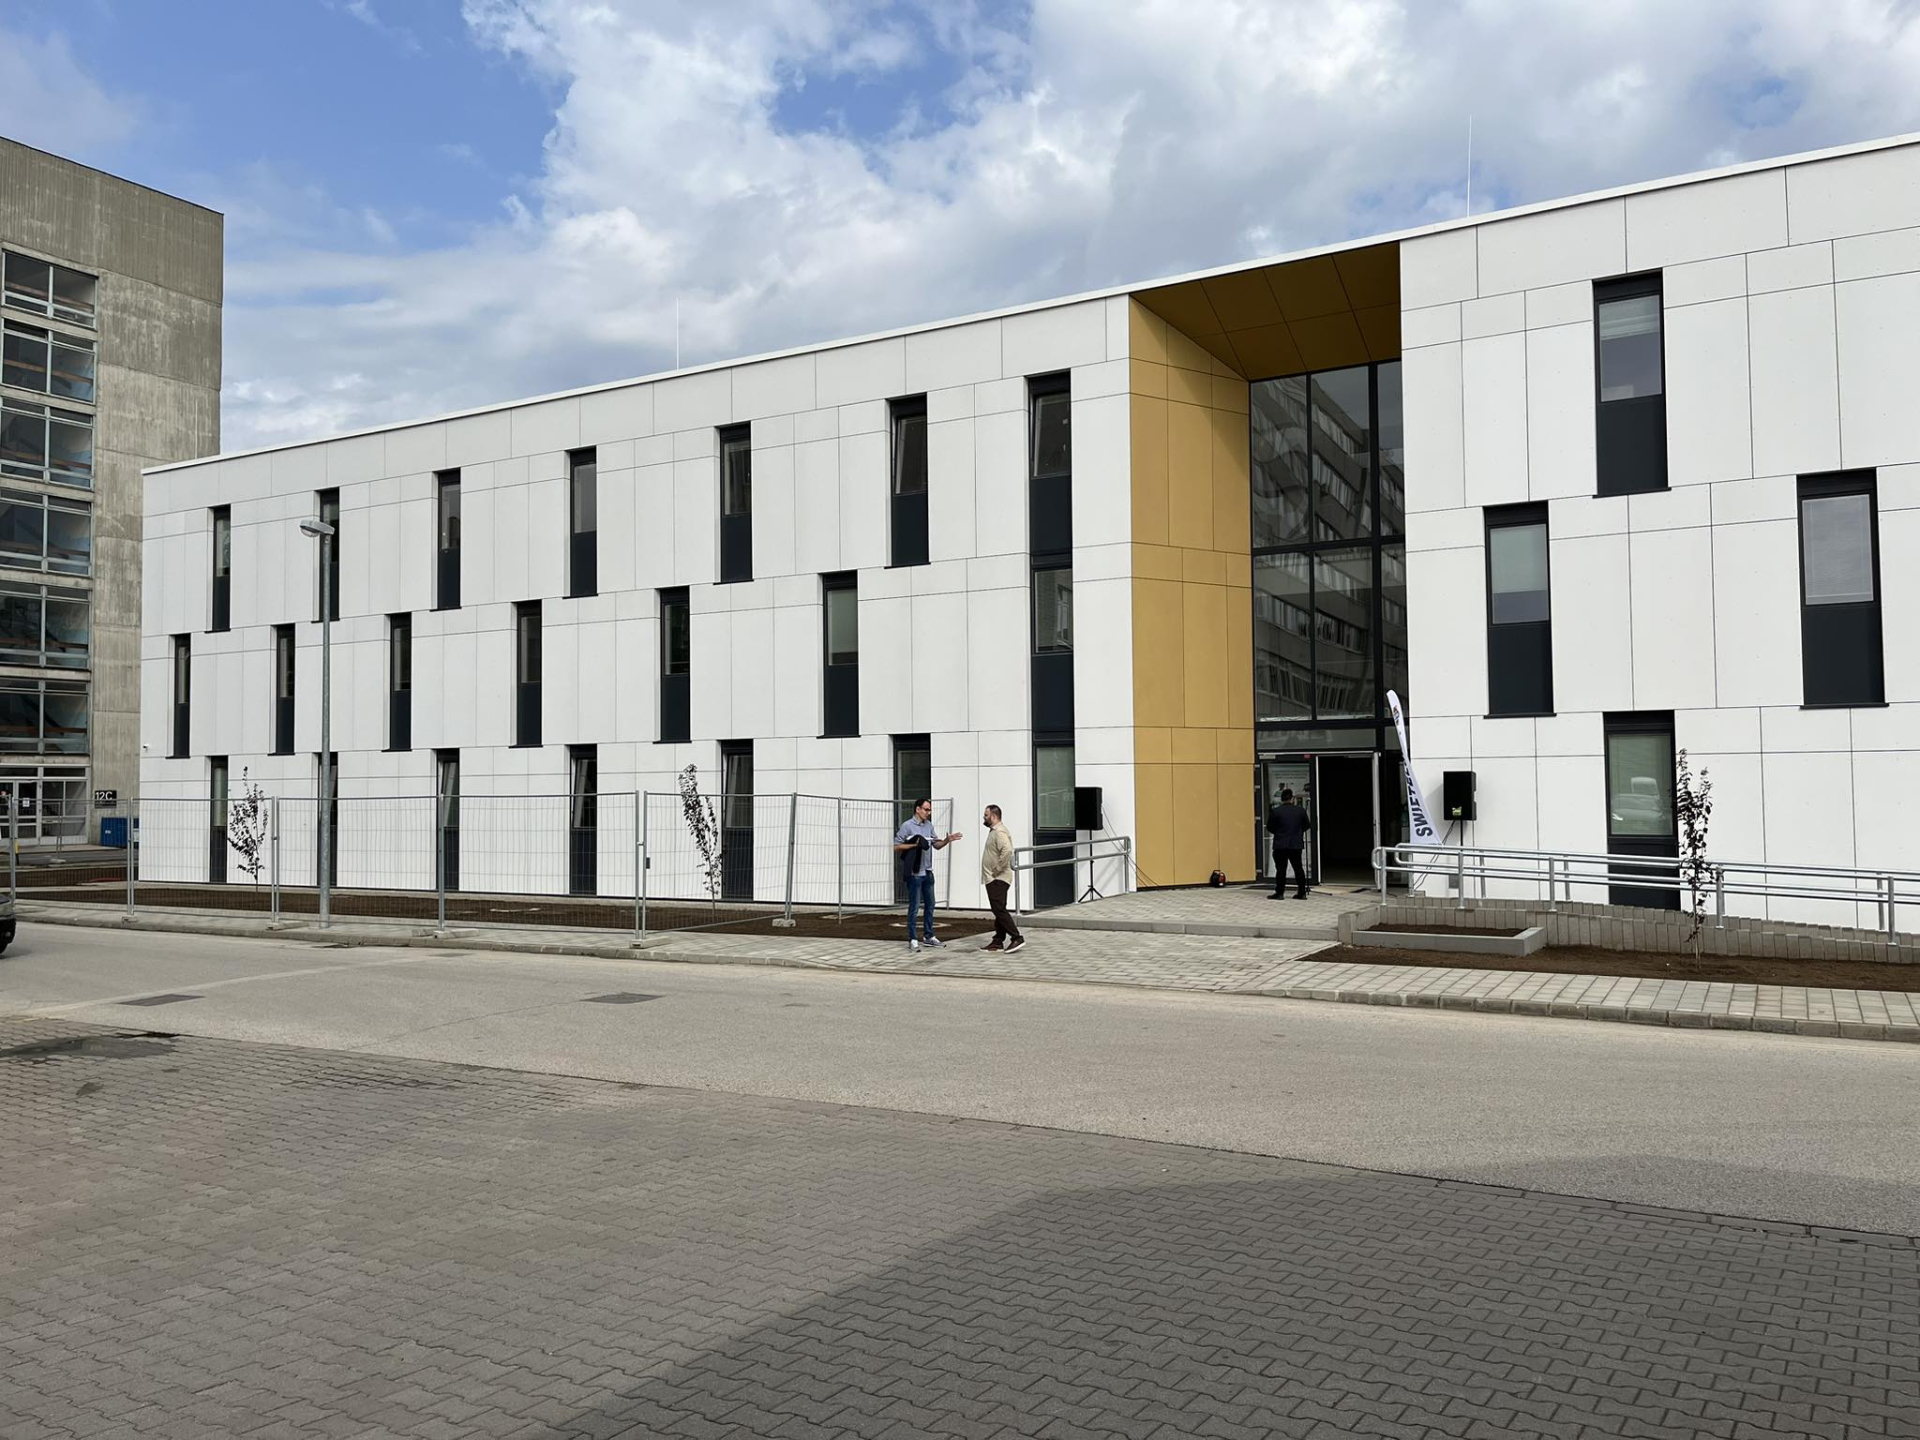 Átadták az új nővérszálló épületét a Nyíregyházi Jósa András Tagkórházban